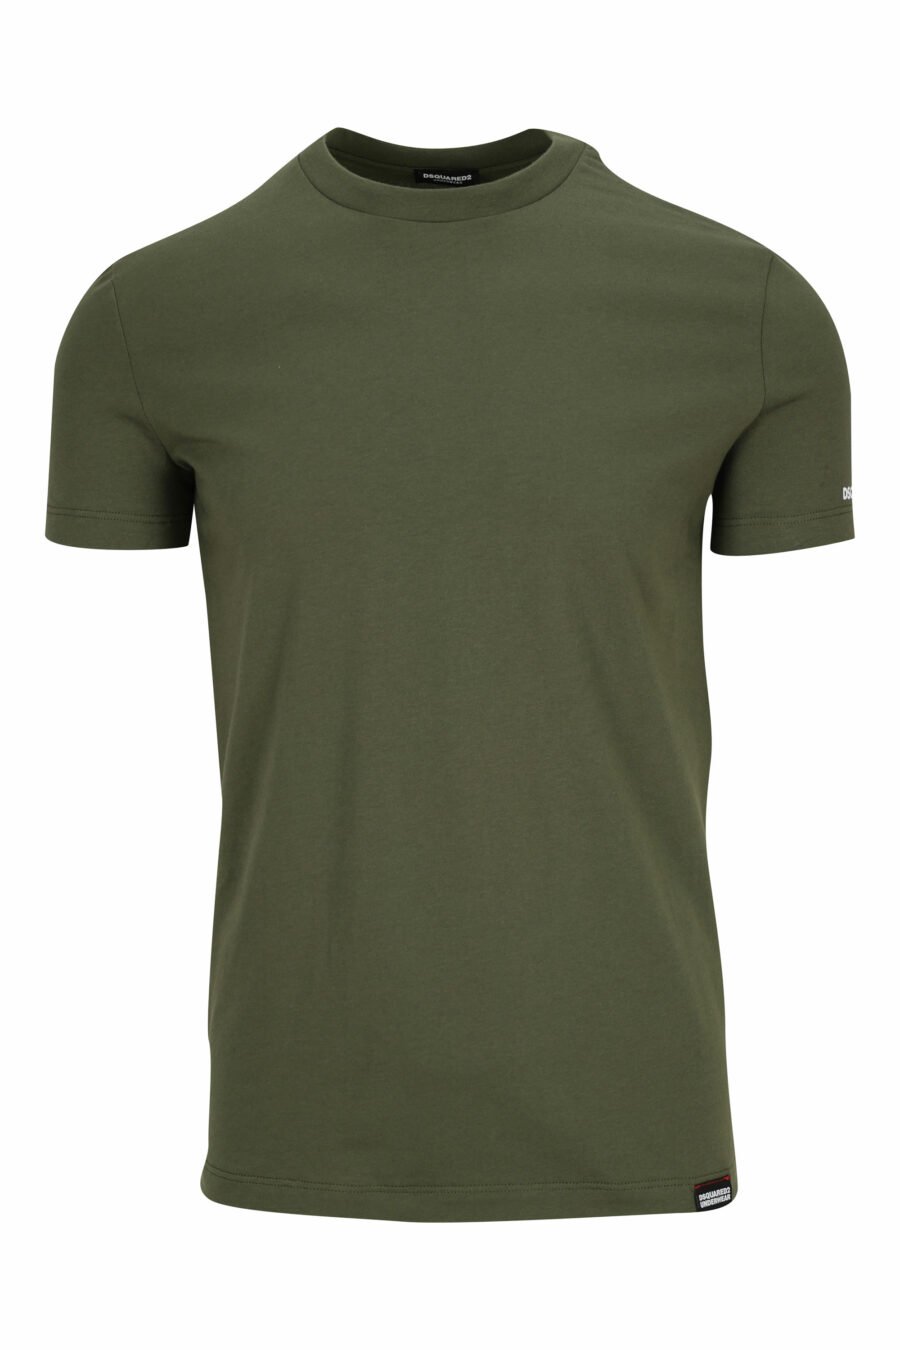 T-shirt vert militaire avec sous-vêtements blancs minilogue - 8032674811622